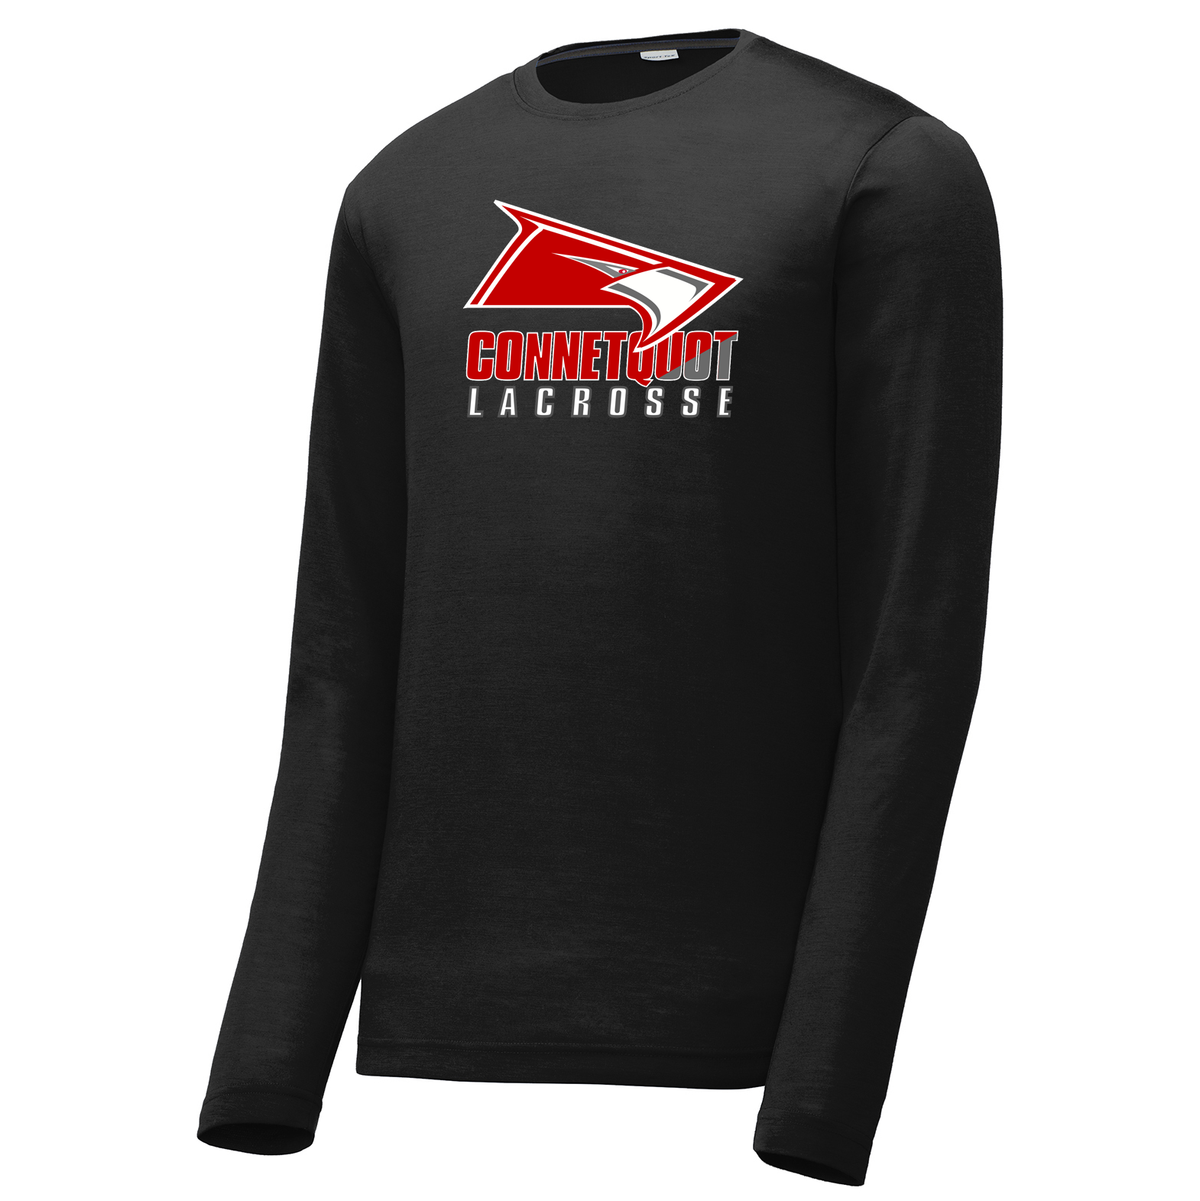 Connetquot Lacrosse Long Sleeve CottonTouch Performance Shirt